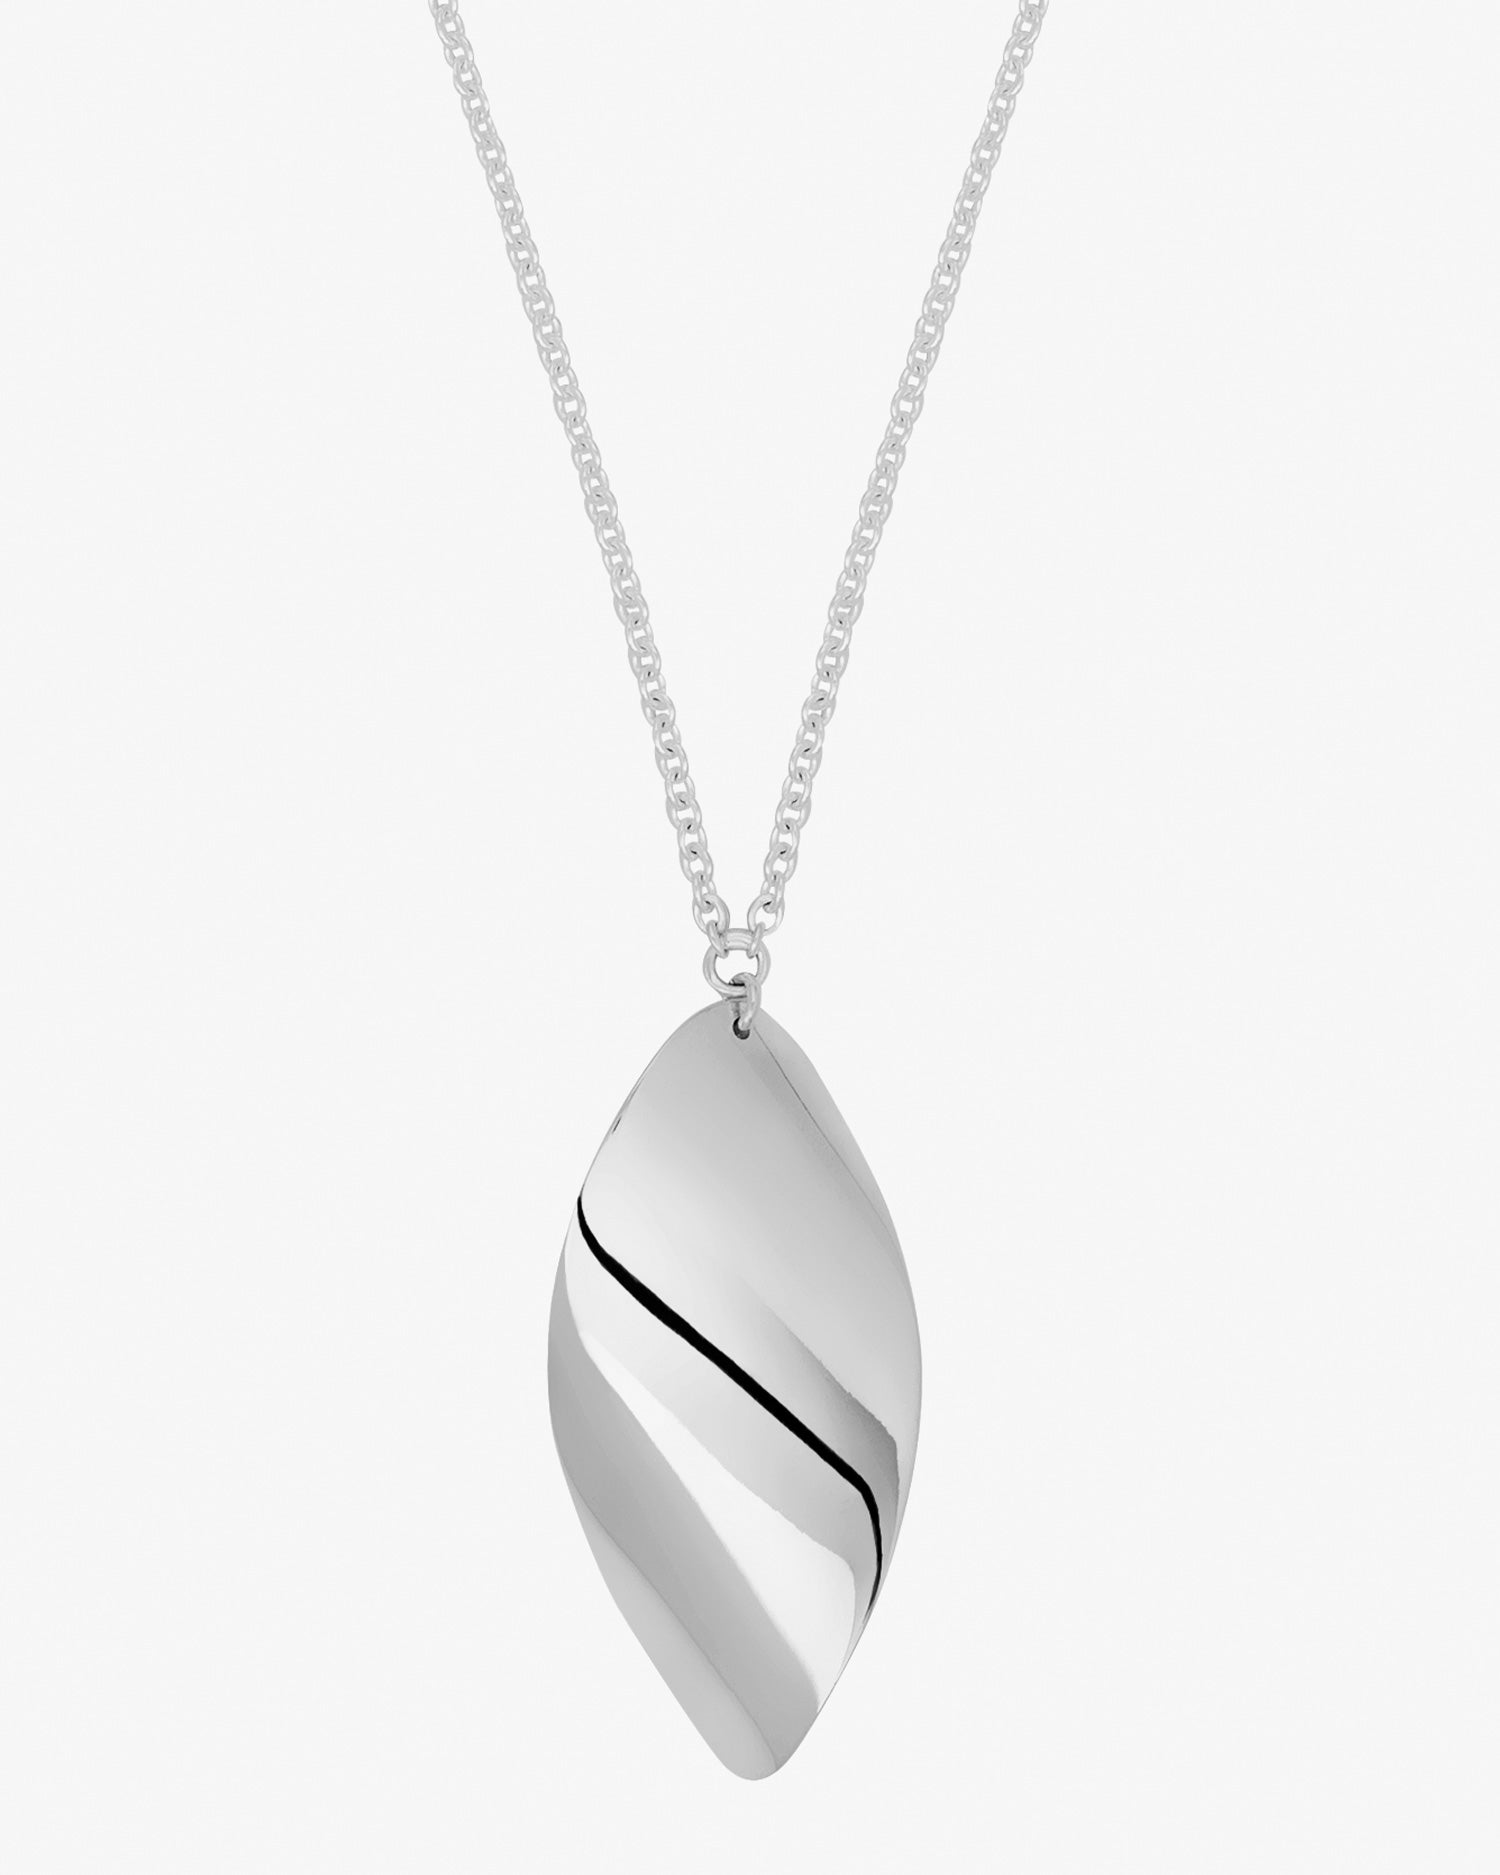 Aqua-necklace